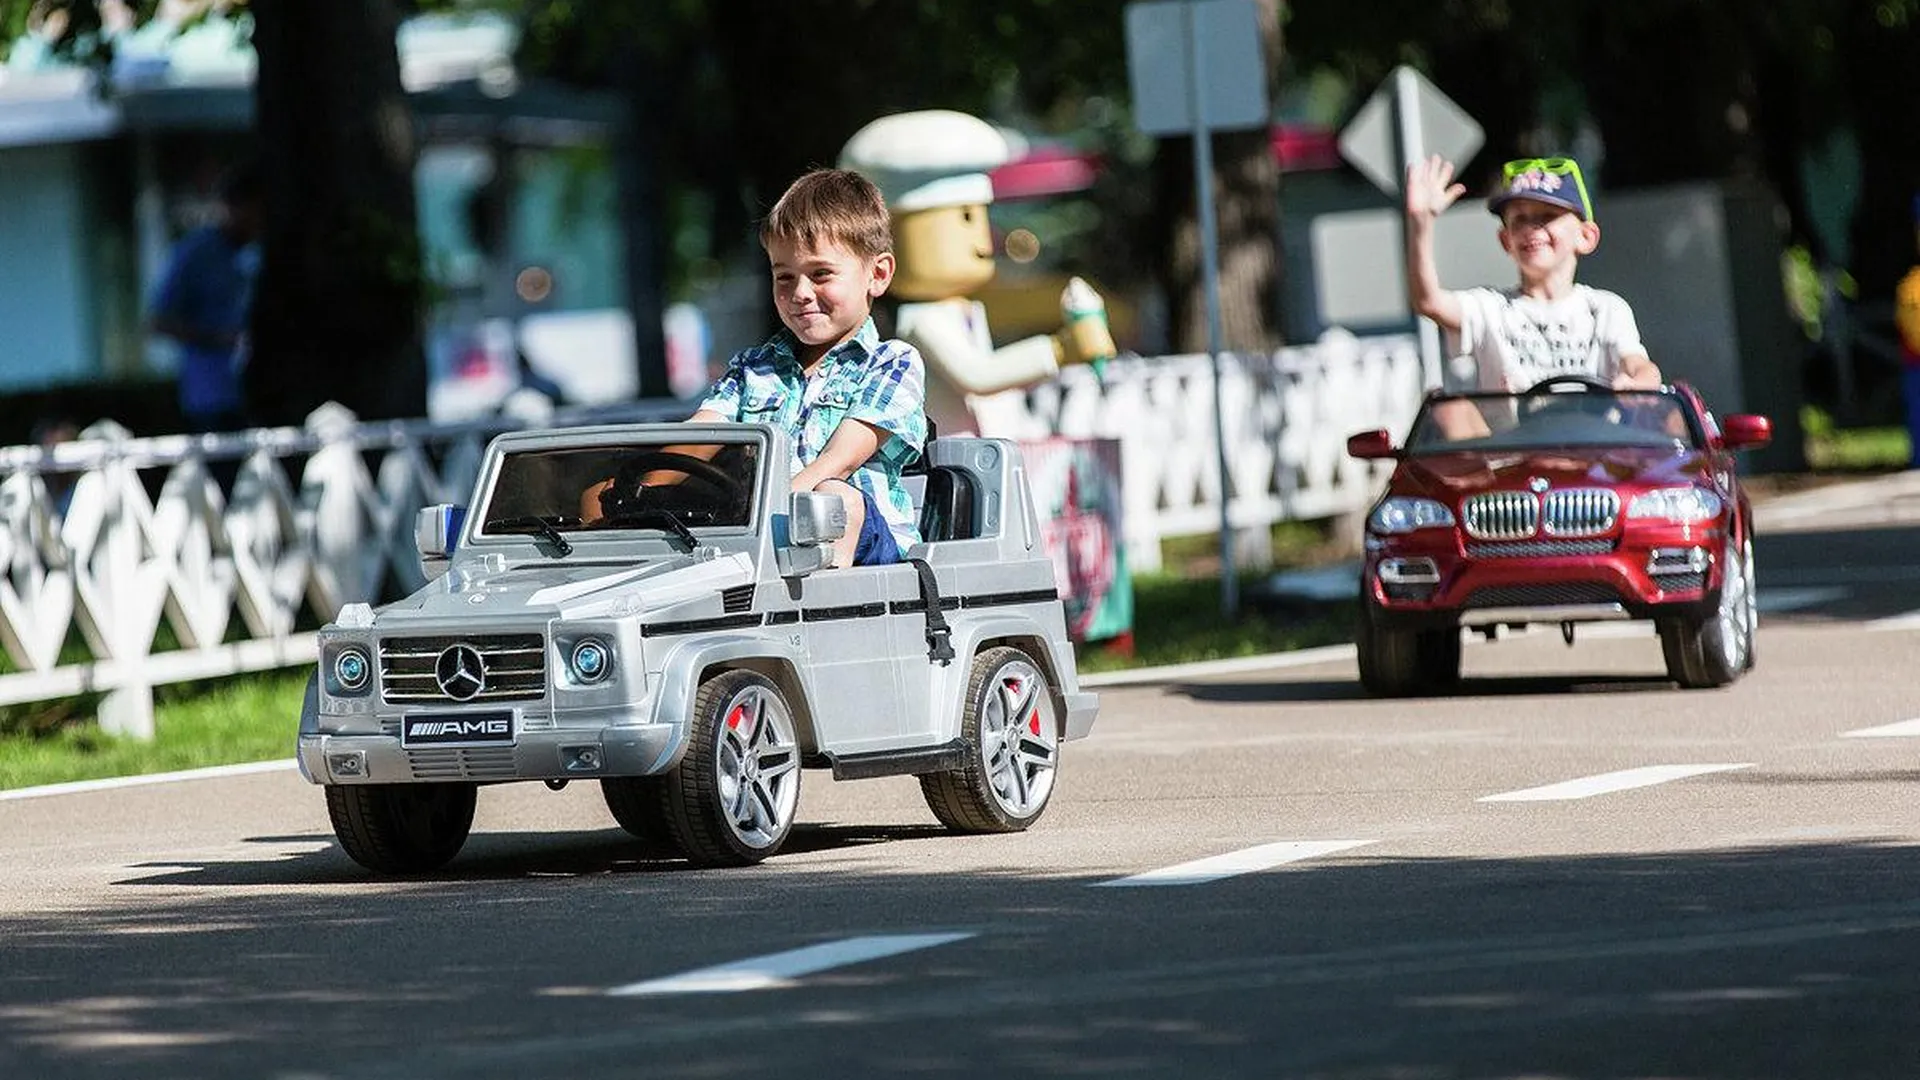 Детский автогородок MotorCity откроют на ВДНХ в Москве 20 апреля